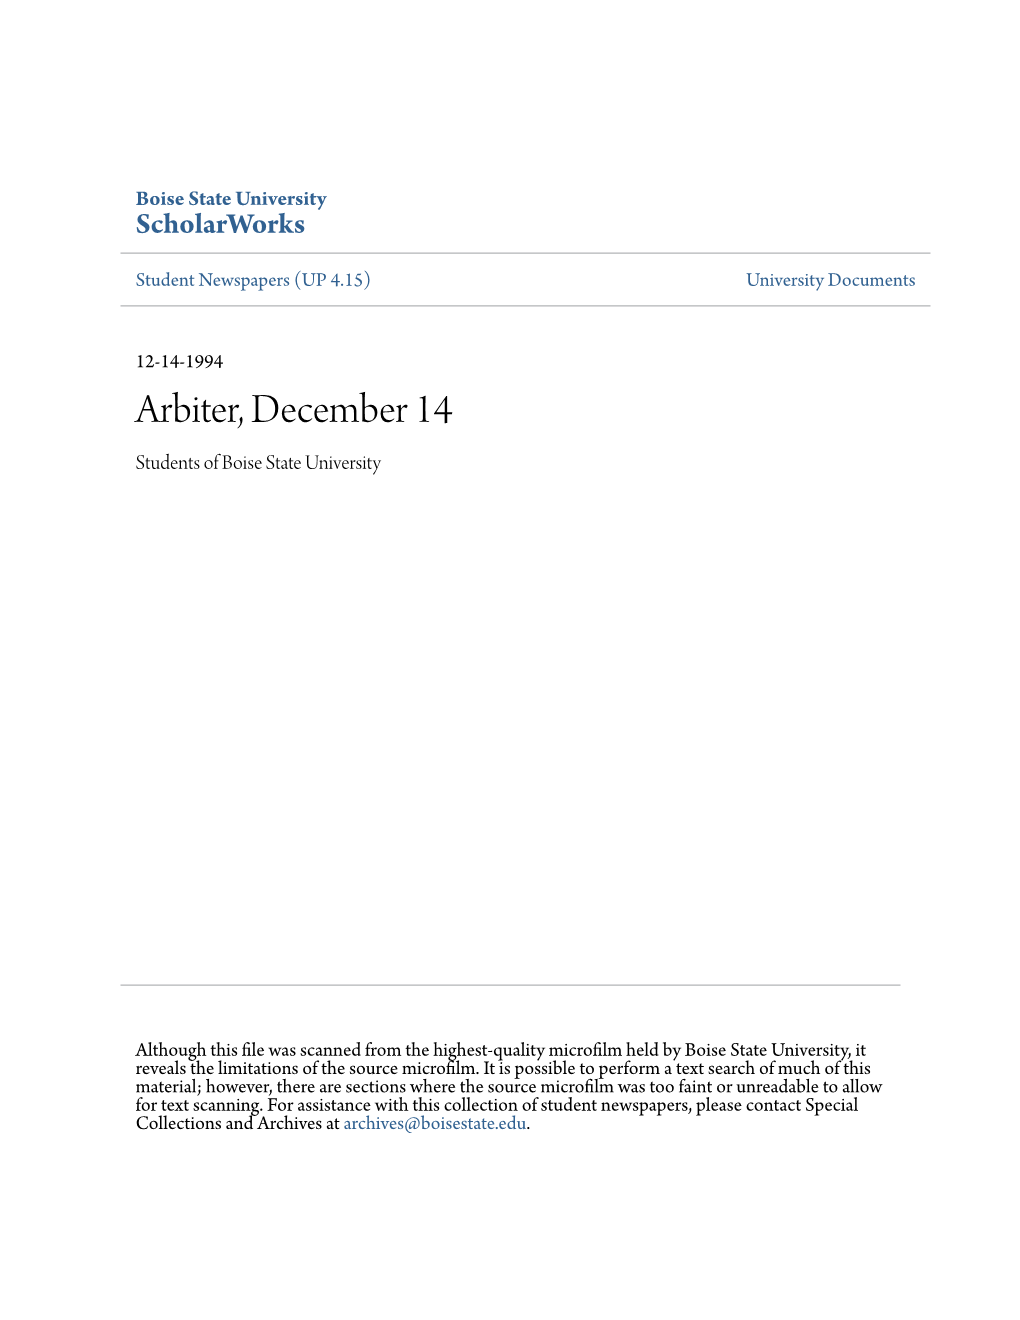 Arbiter, December 14 Students of Boise State University